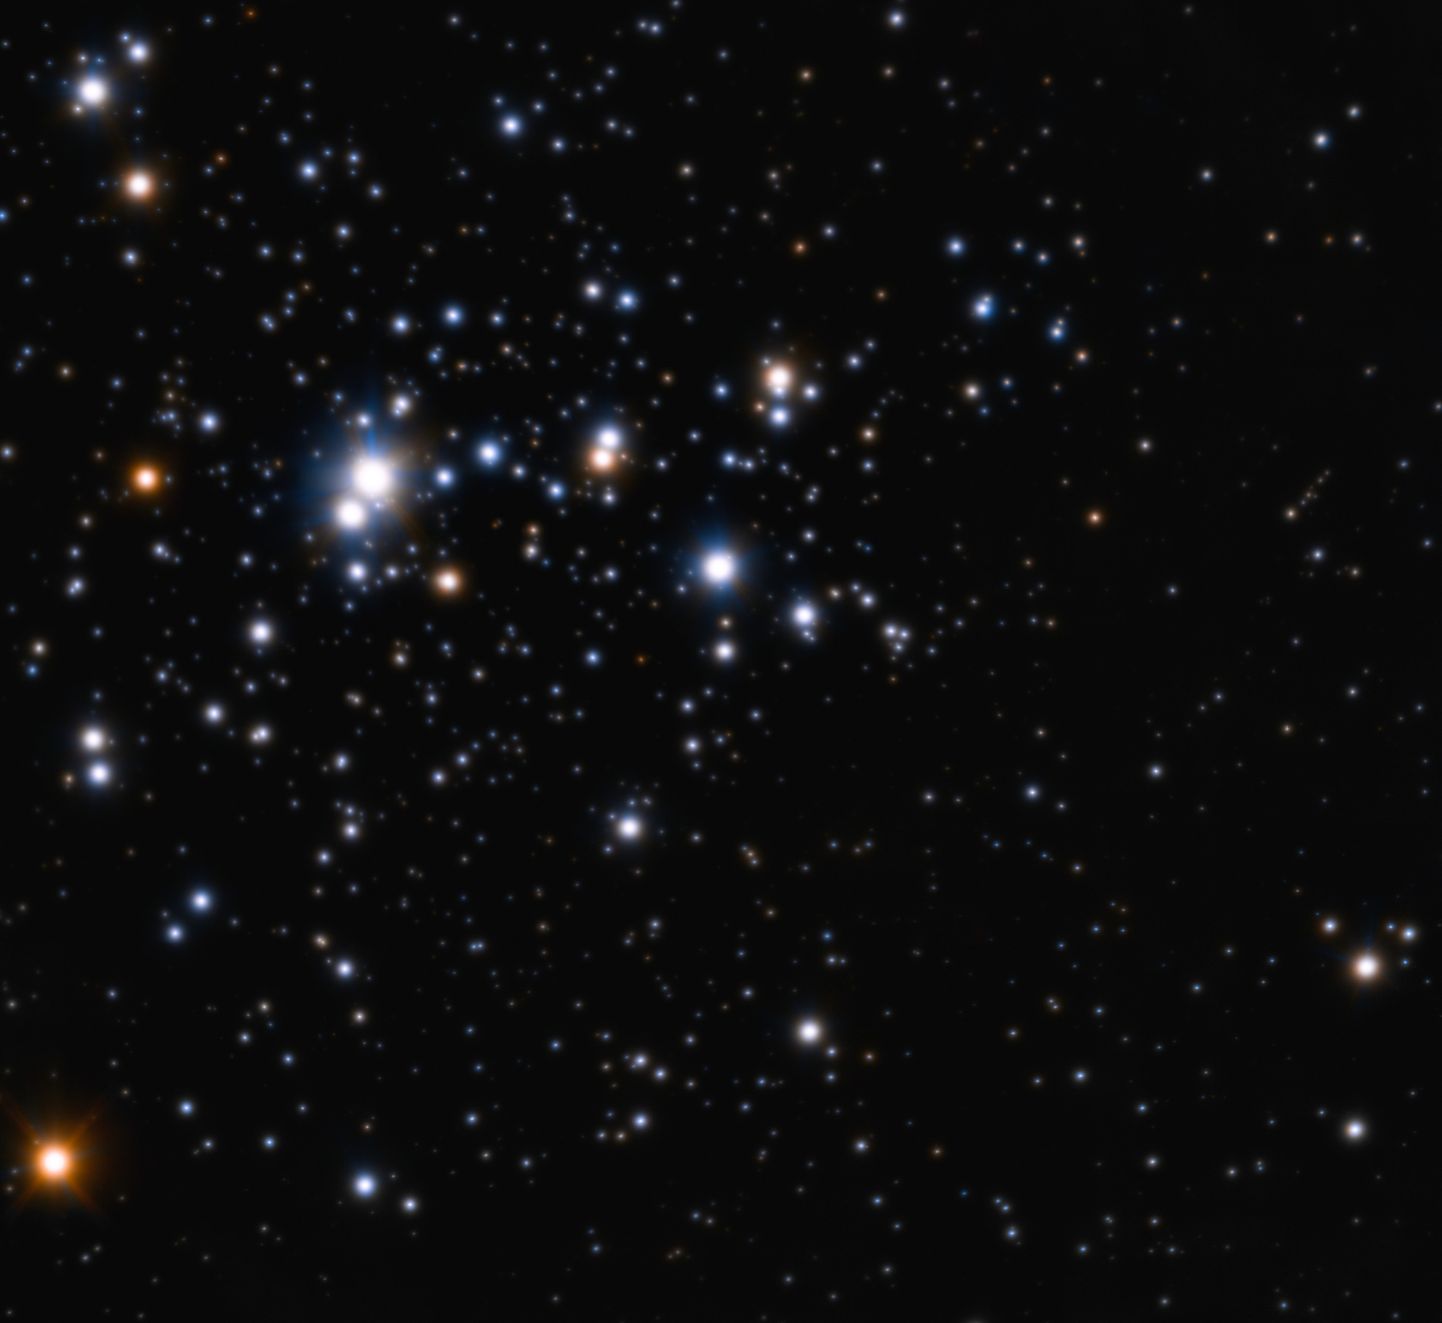 Trumpler 14 täheparv sisaldab enam kui 2000 tähte ning sarnaneb keskkonnaga, kus Päikegi sündida võis.